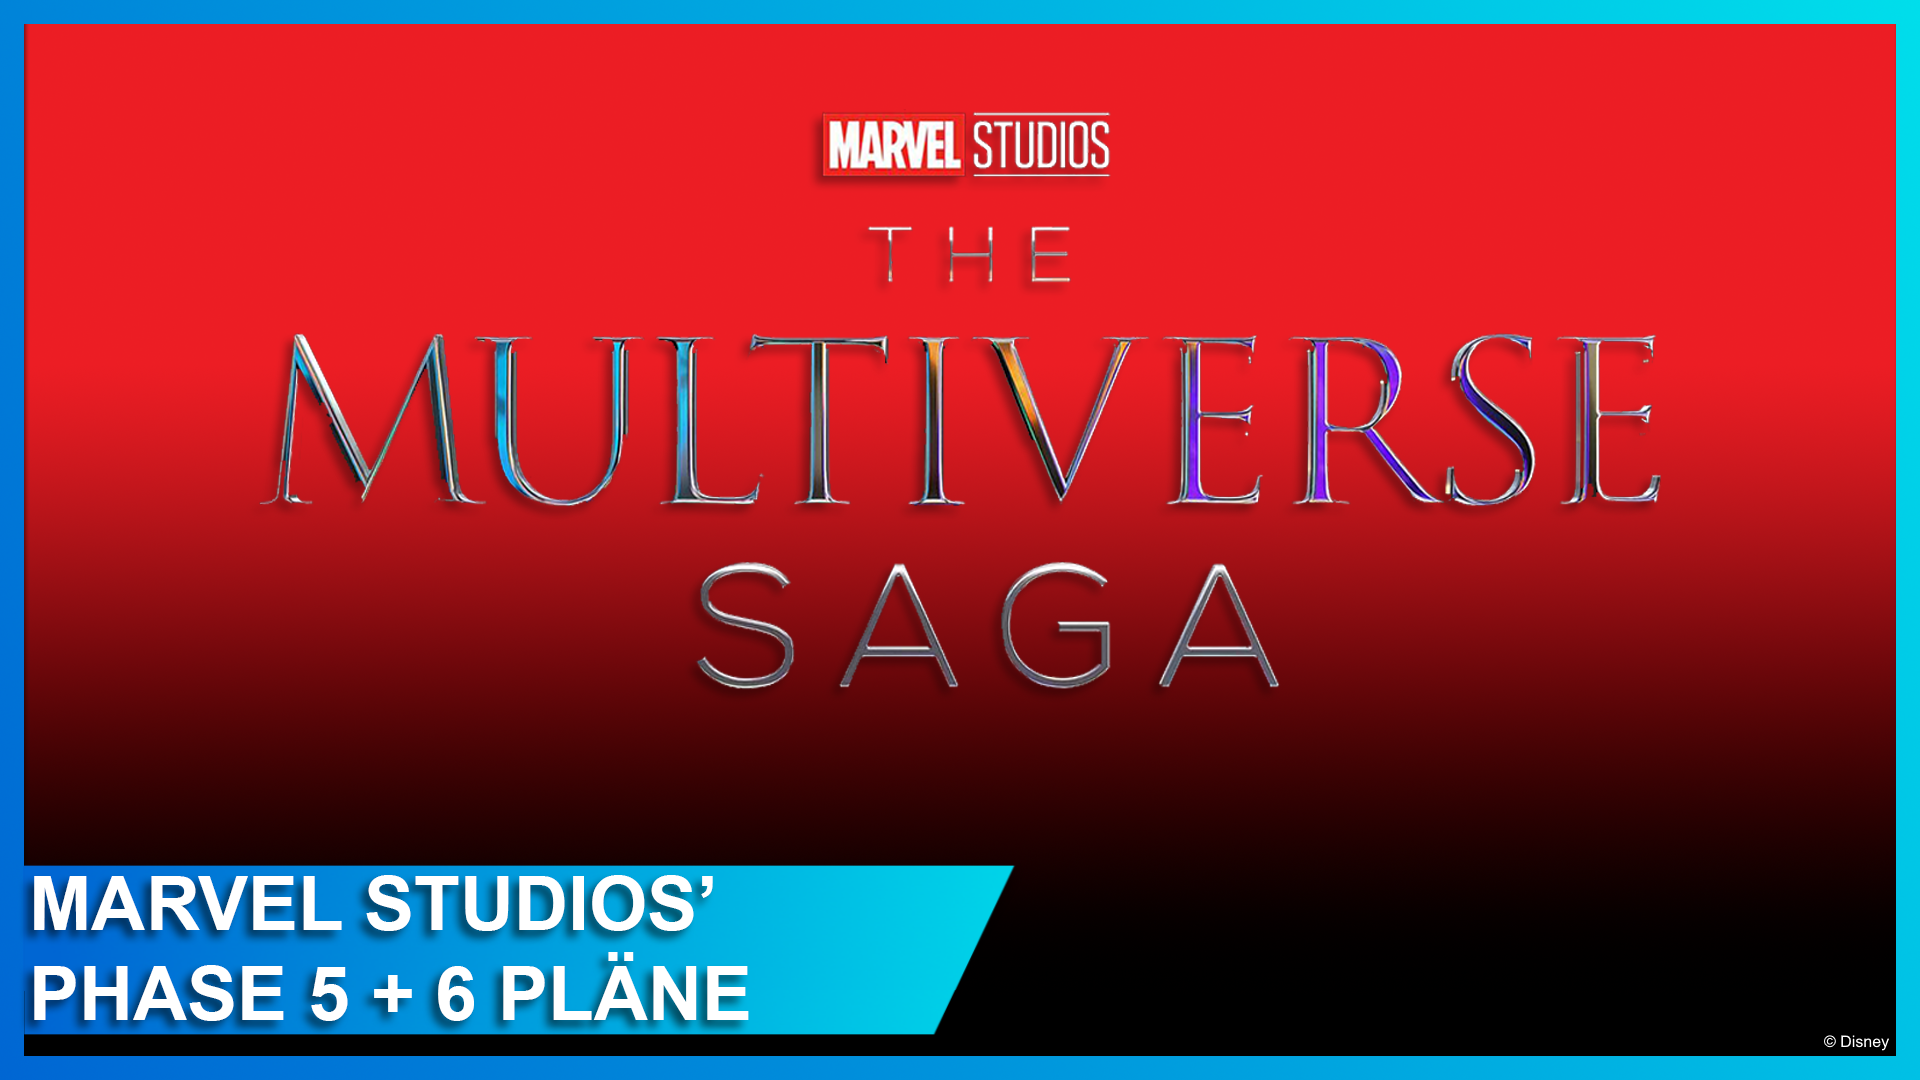 Phase 5 und 6 enthüllt: 15 neue Marvel-Filme und Serien kommen! Inkl. zwei  neuen Avengers Filmen im selben Jahr, Fantastic Four und mehr! |  DisneyCentral.de – dein Disney Fan Portal